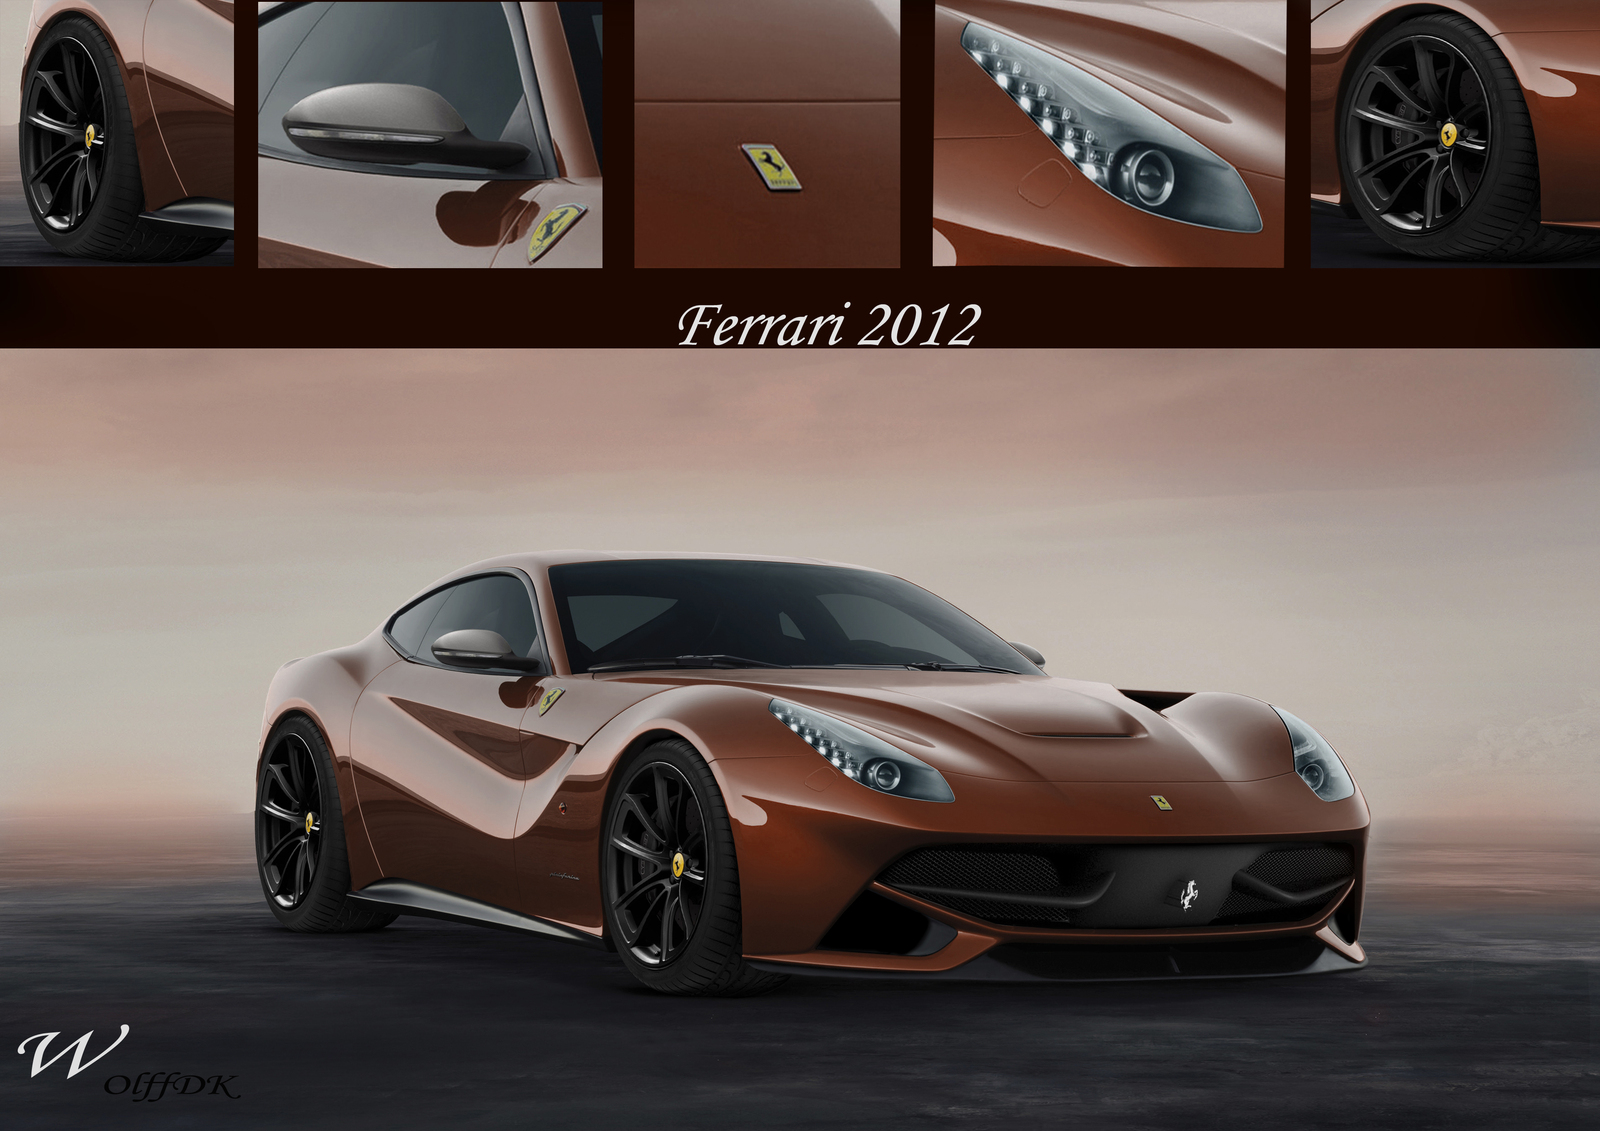 Ferrari_F12_2012_by_wolffDK_by_wolffDK.jpg